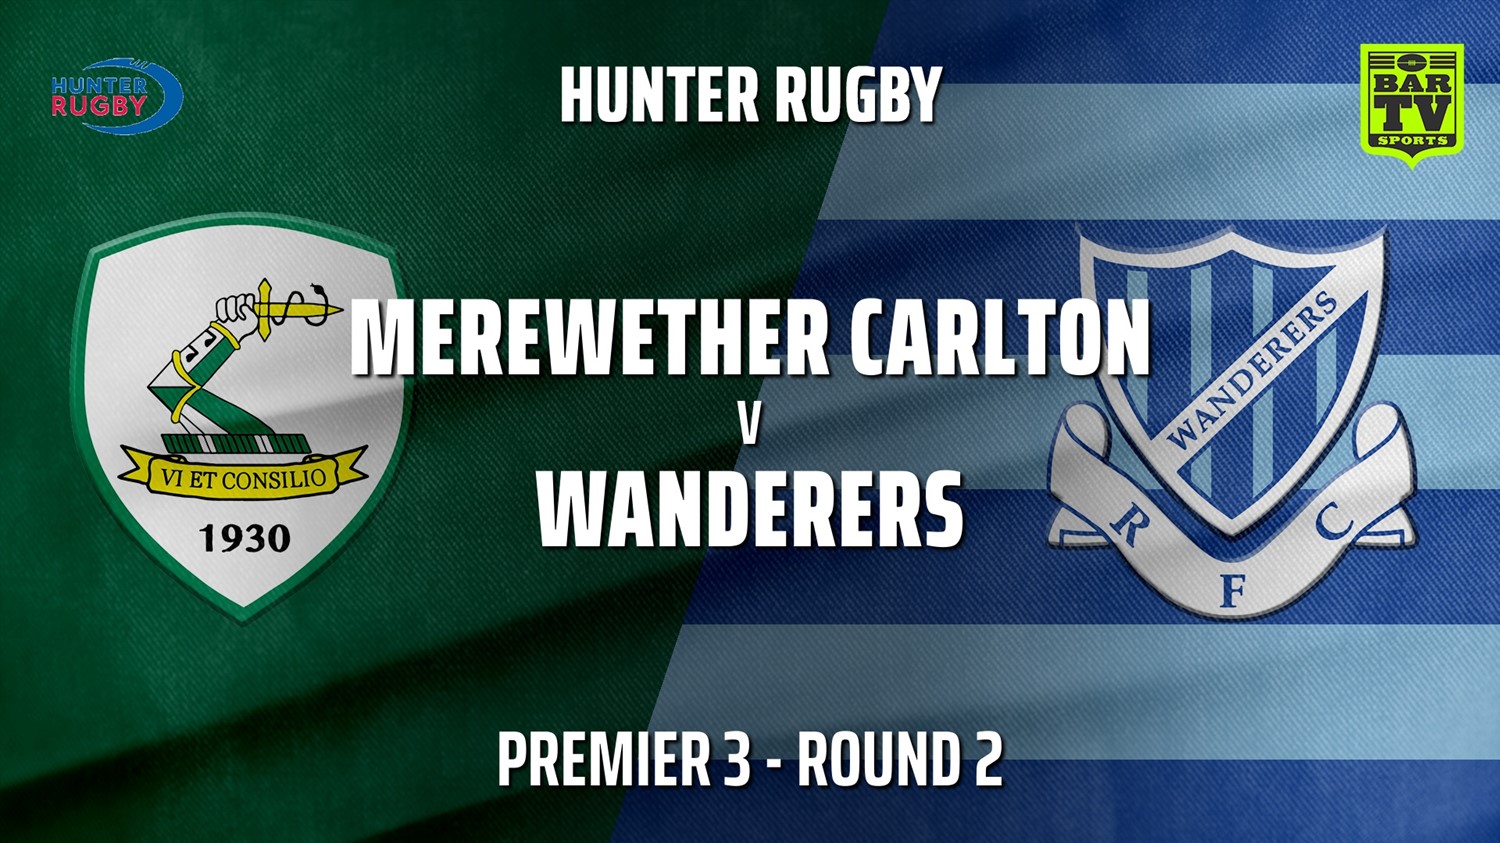 210421-HRU Round 2 - Premier 3 - Merewether Carlton v Wanderers Slate Image